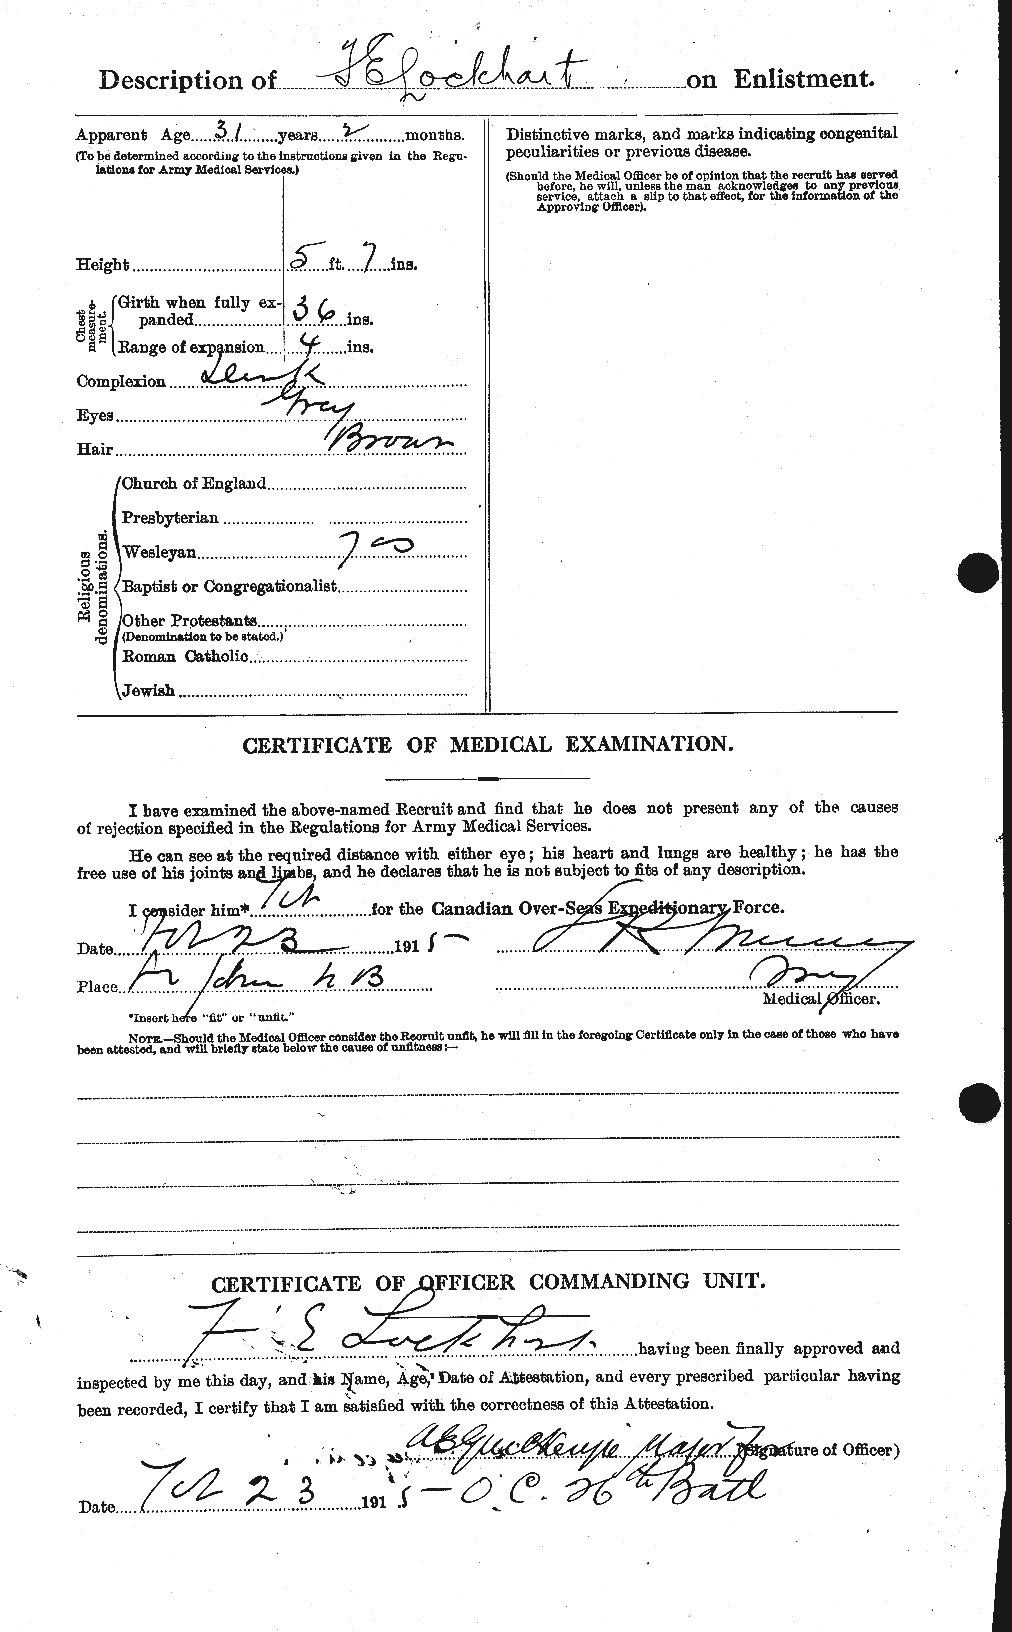 Dossiers du Personnel de la Première Guerre mondiale - CEC 474501b